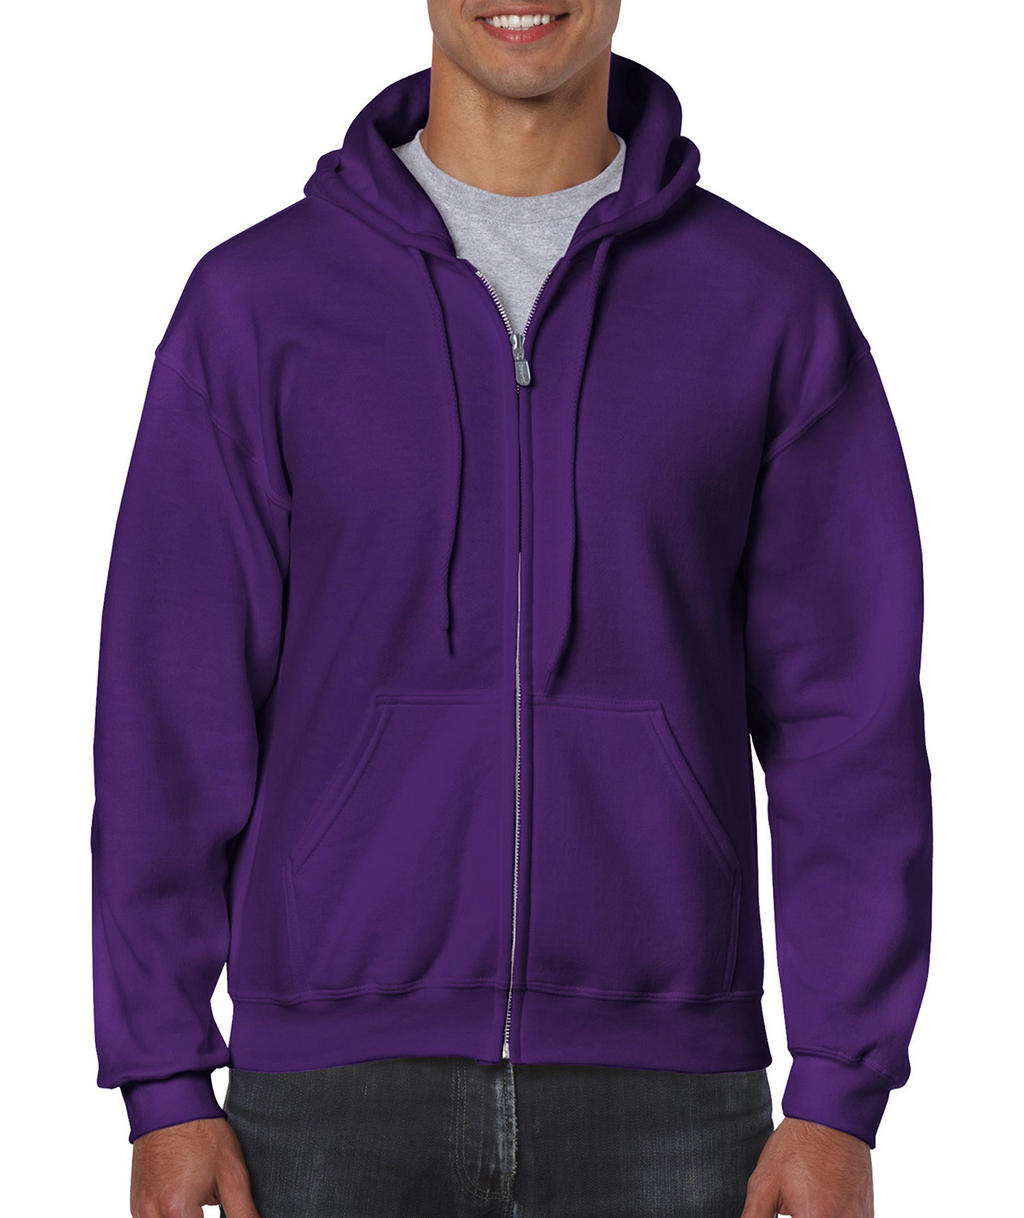  Heavy Blend Adult Full Zip Hooded Sweat in Farbe Purple